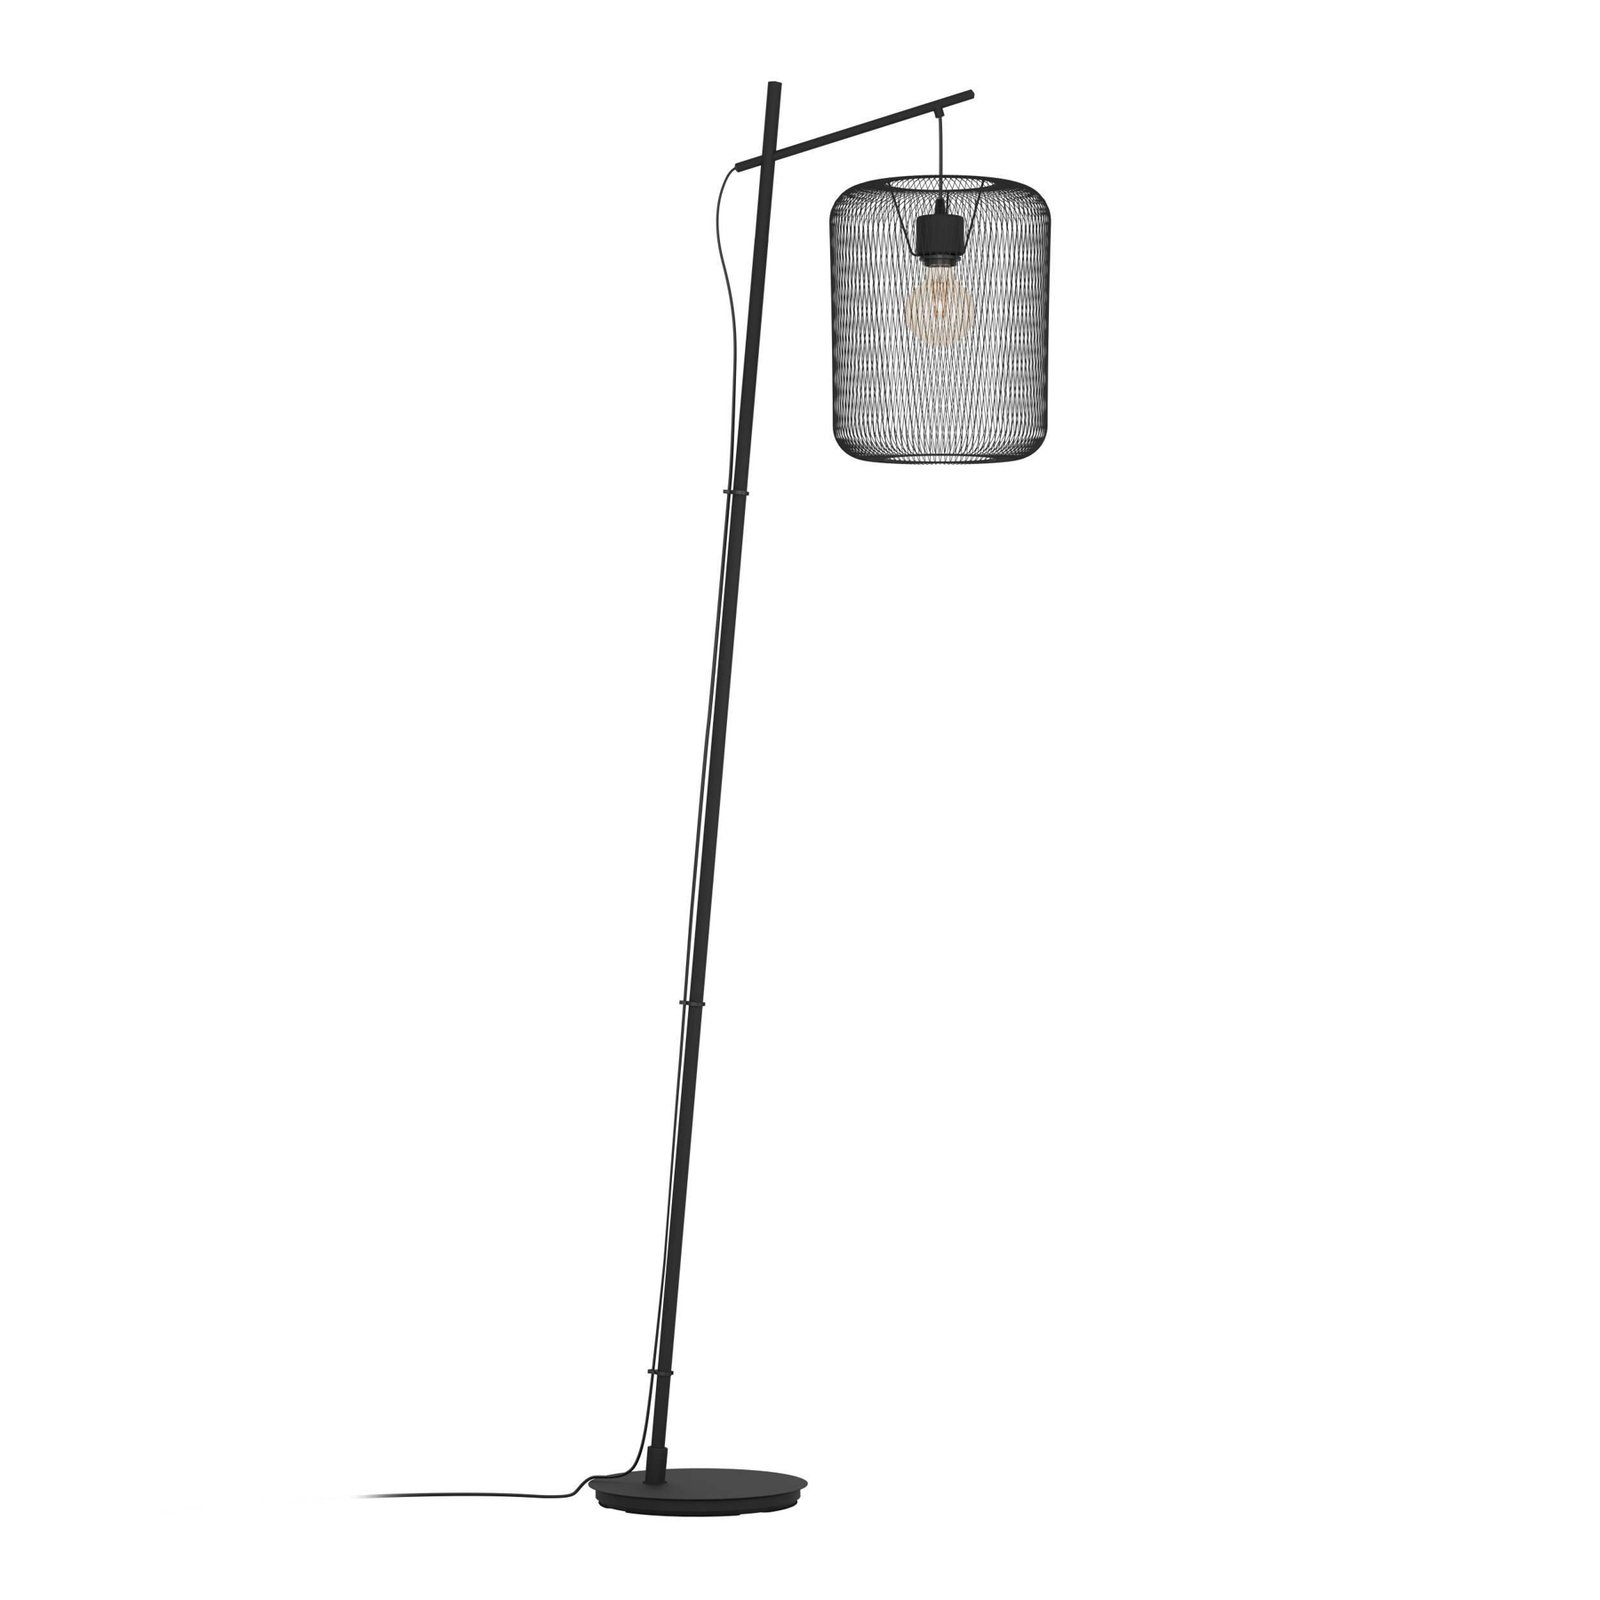 Wrington gulvlampe, høyde 194 cm, svart, stål